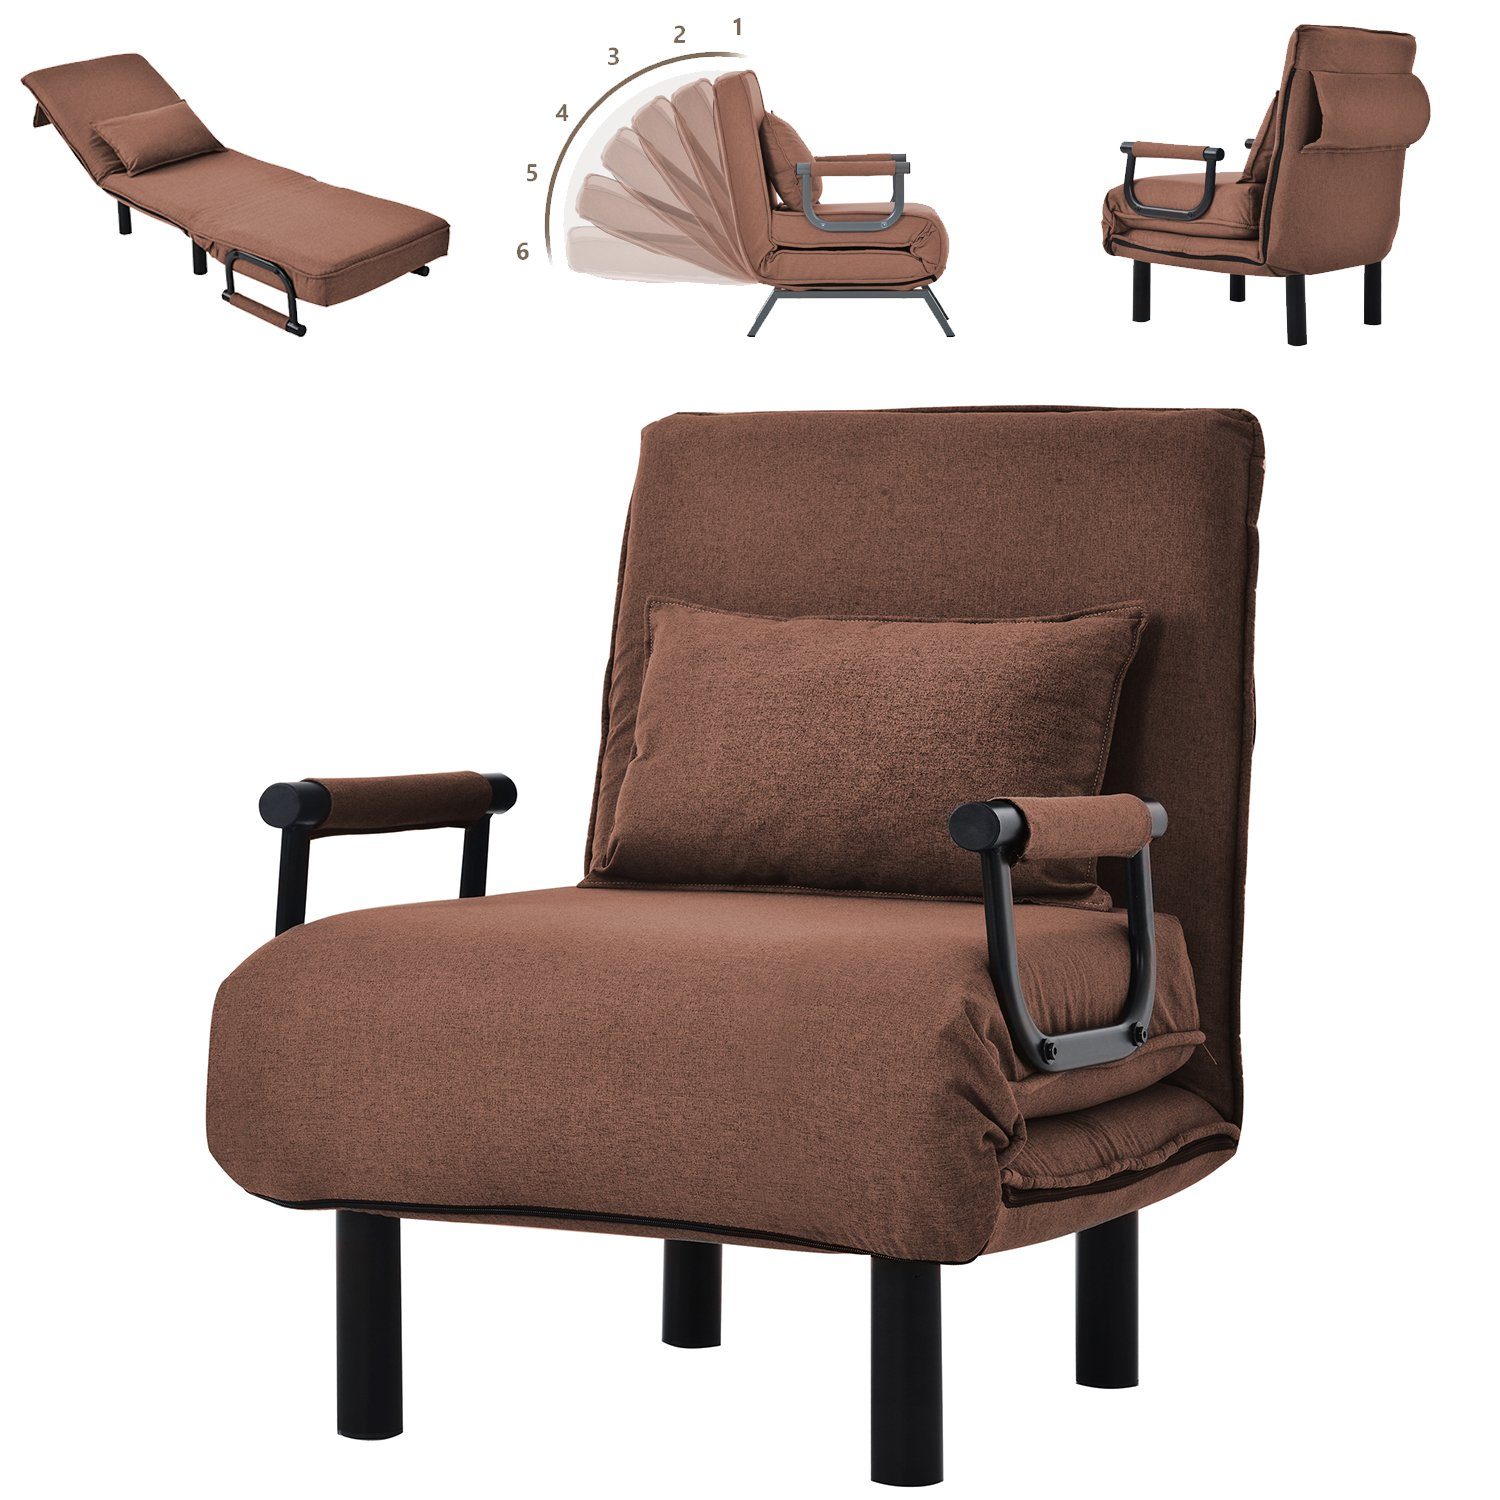 Dedom Relaxsessel Relaxsessel,Fernsehsessel,verstellbare Rückenlehne mit 6 Positionen Braun